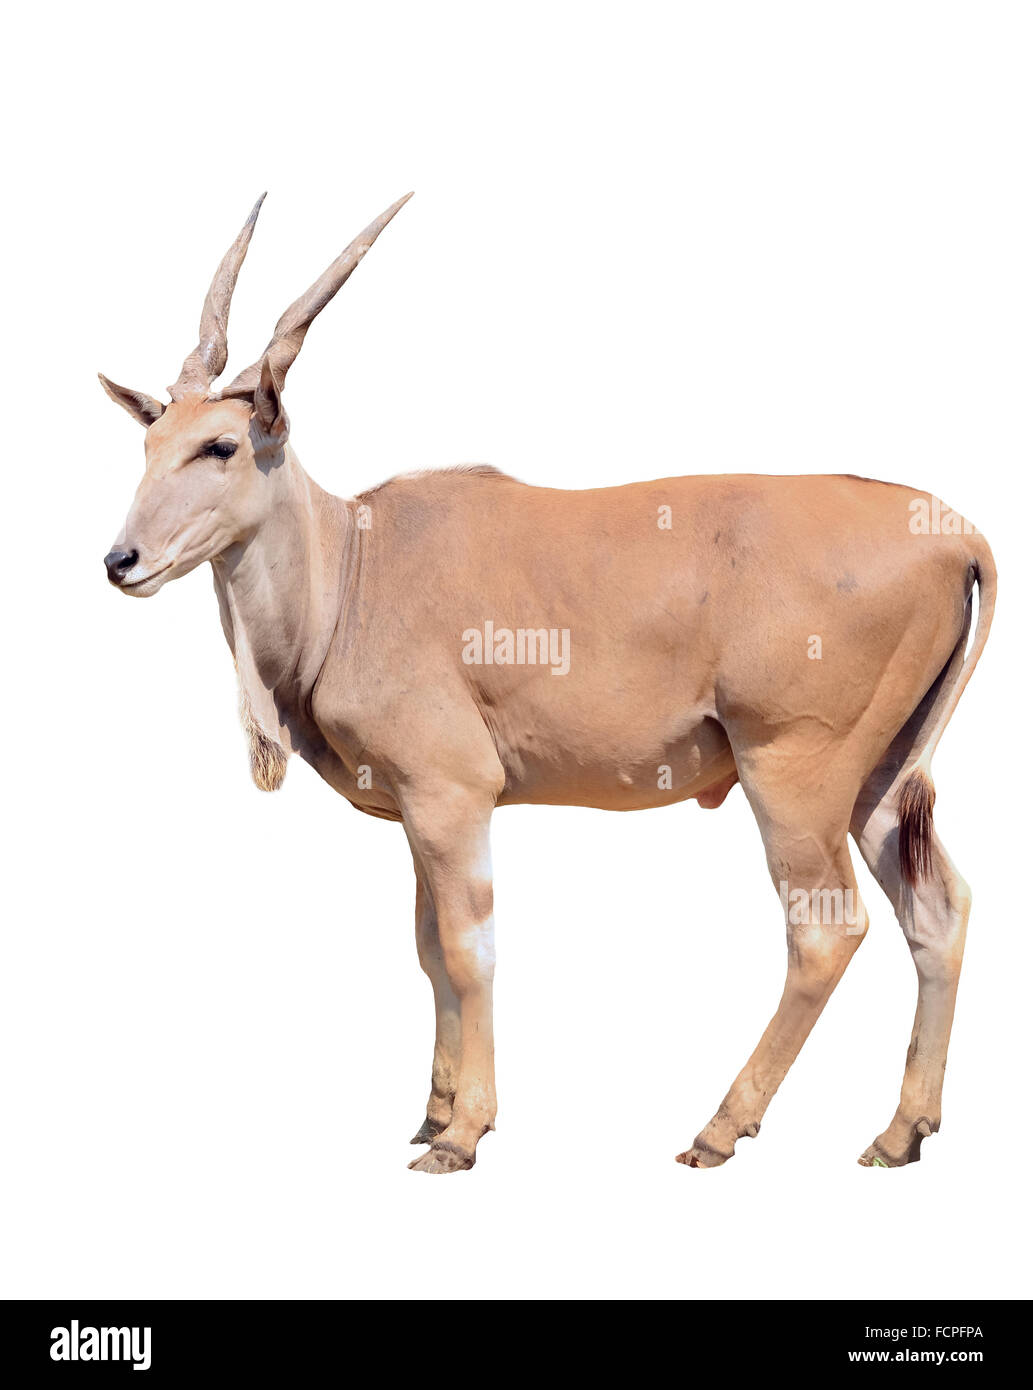 eland isolated on white background Stock Photo